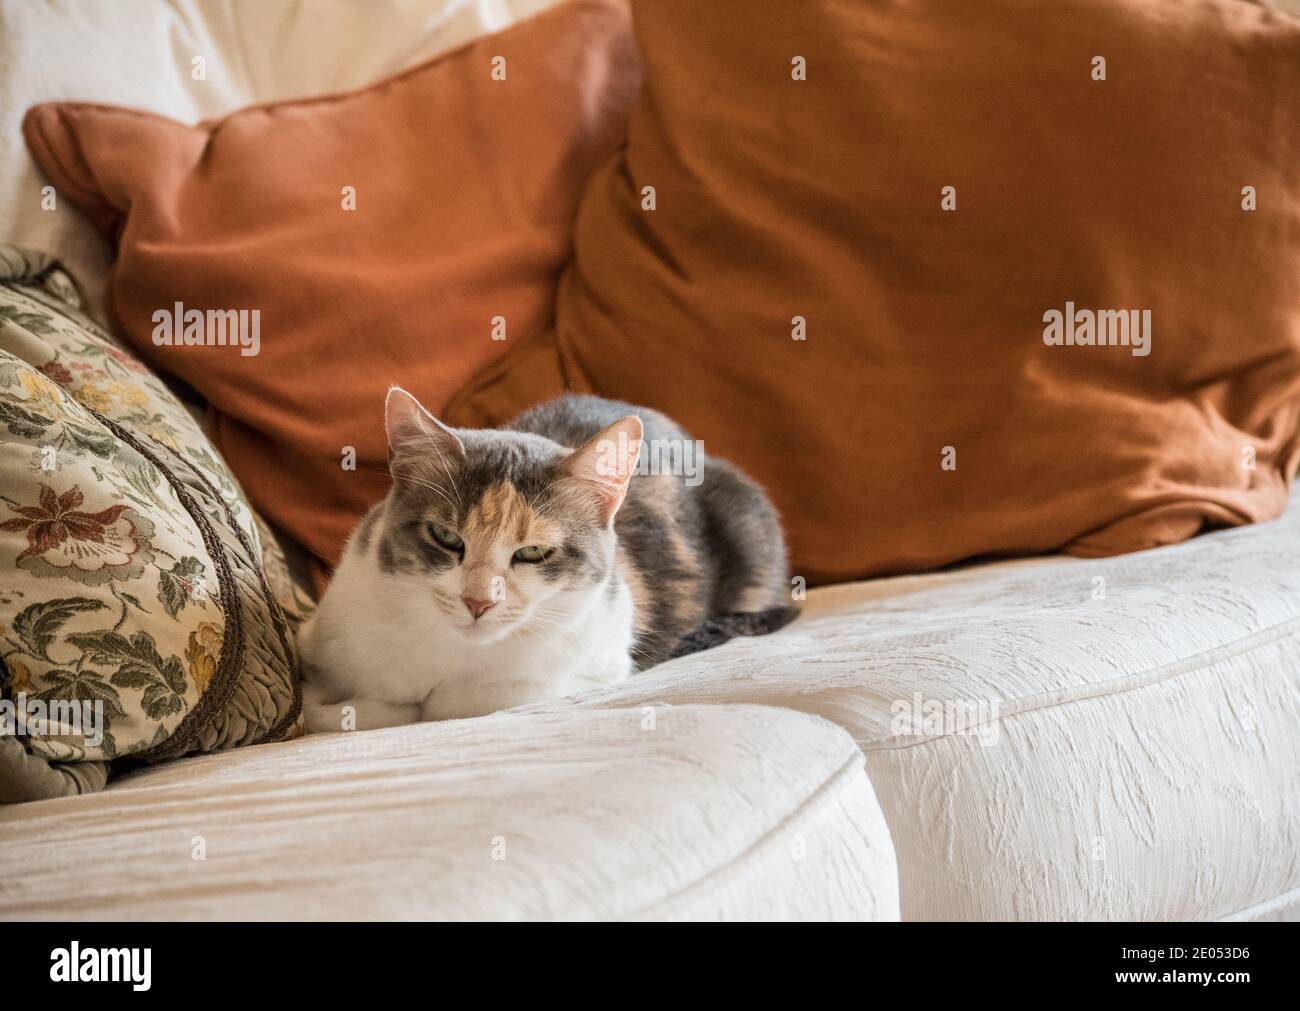 Wunderschöne pelzige graue und weiße Katze mit Tabby, die auf einer luxuriösen cremefarbenen Couch mit Rostkissen sitzt. Ein verwöhntes, luxuriöses Kätzchen. Stockfoto